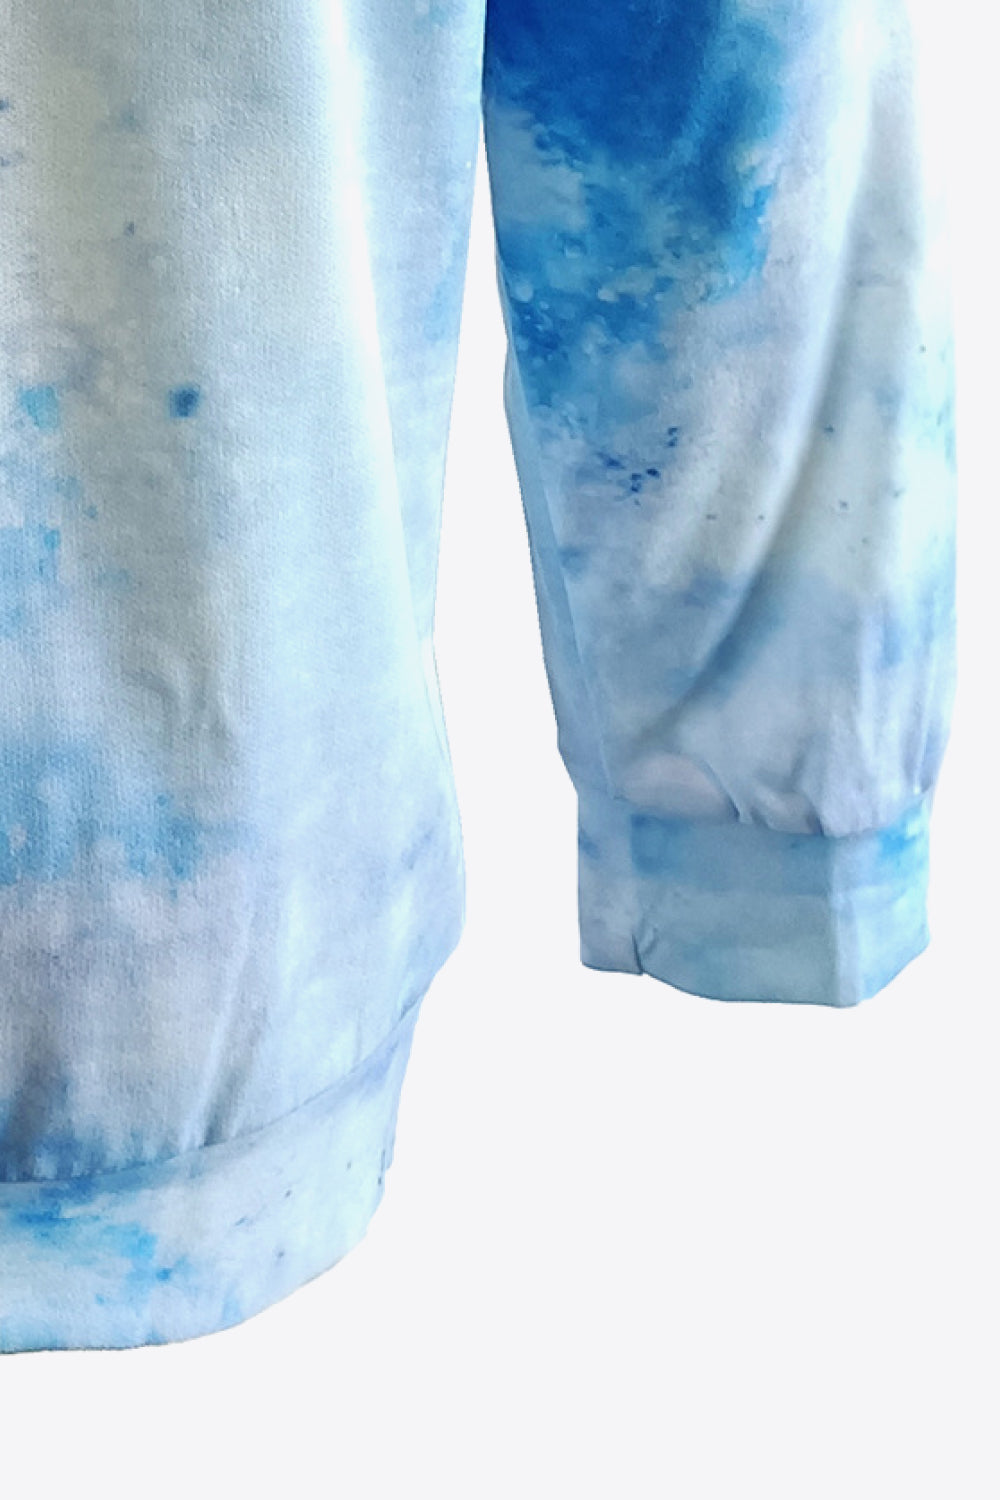 Tie-Dye Butterfly Graphic Raglan Sleeve Sweatshirt - Sweatshirts & Hoodies - FITGGINS